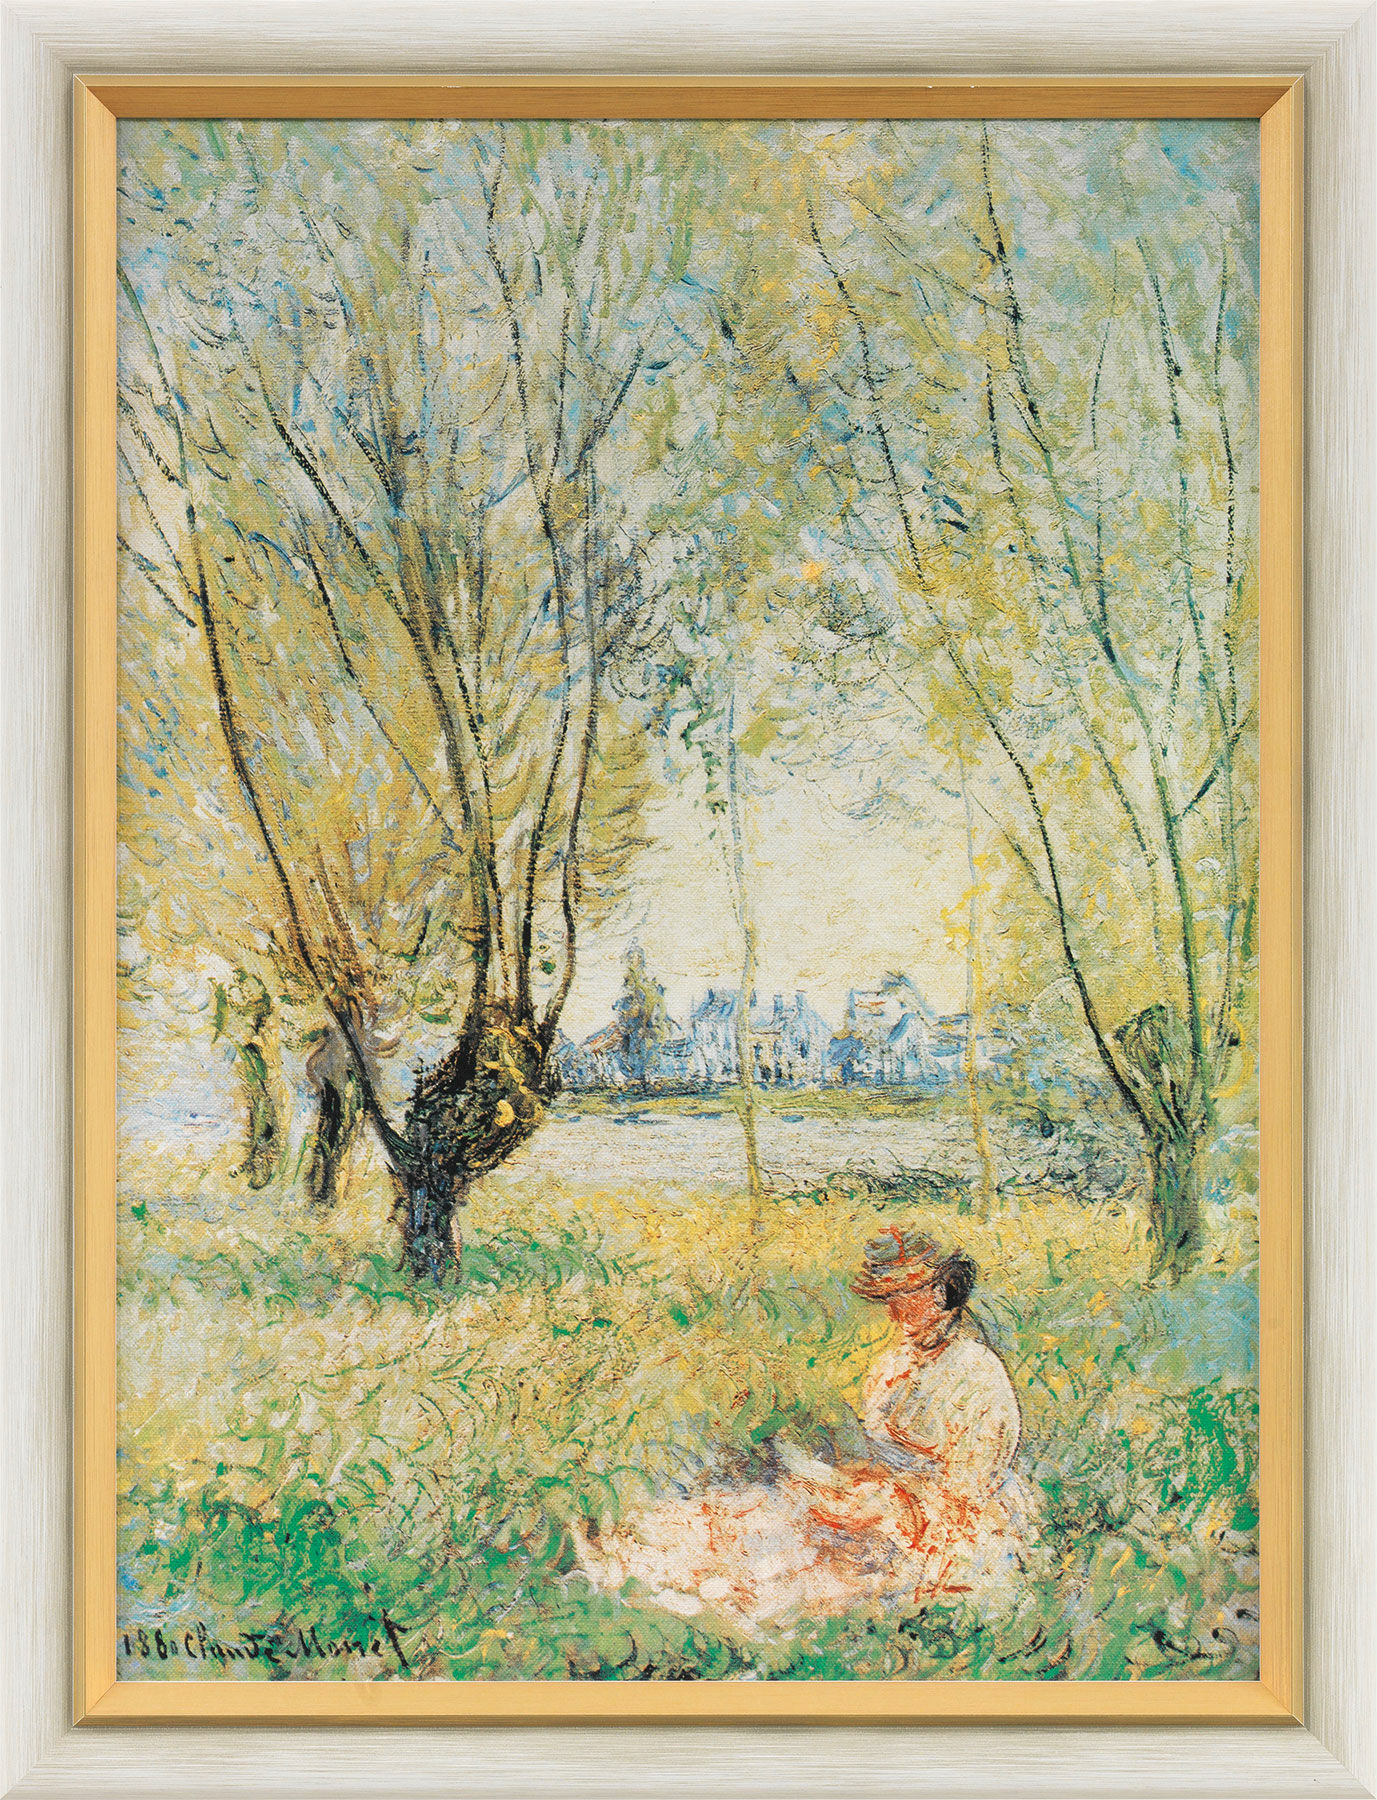 Tableau "Femme assise sous les saules" (1880), encadré von Claude Monet